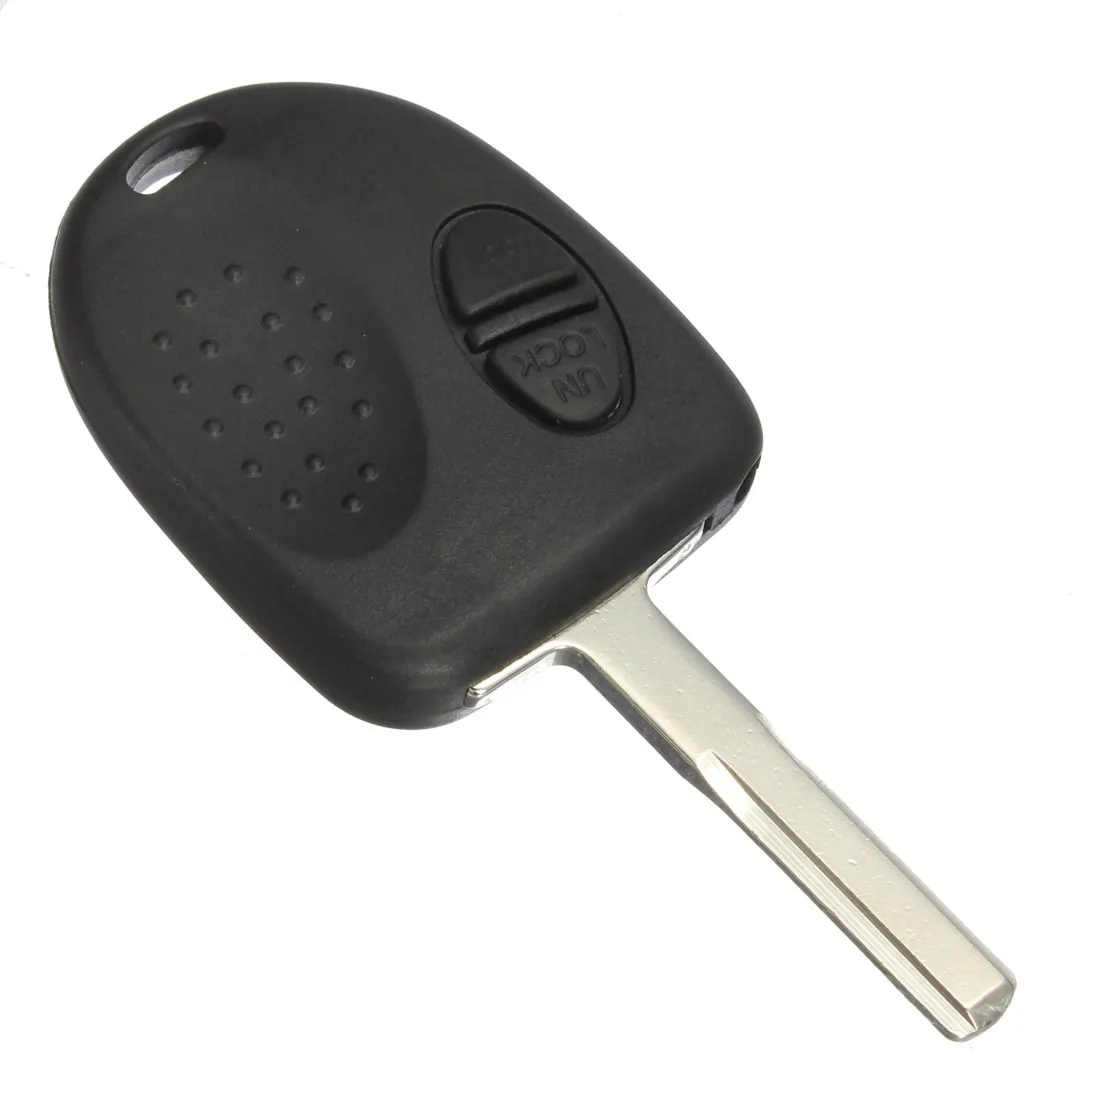 Фото Горячая продажа 2 кнопки чехол ключа дистанционного управления автомобилем